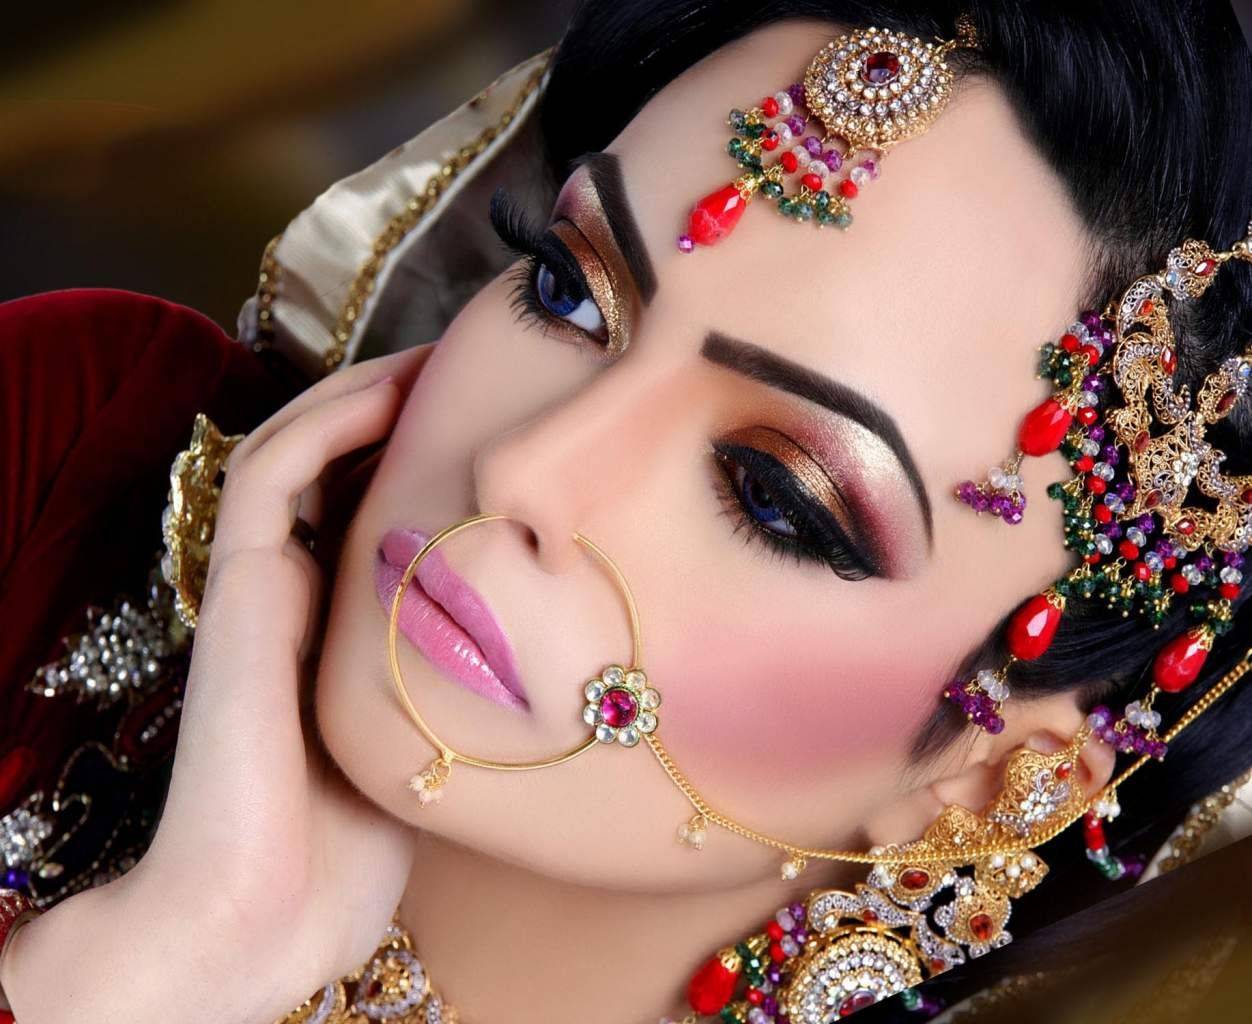 Как сделать арабский макияж для голубых, карих и зеленых глаз